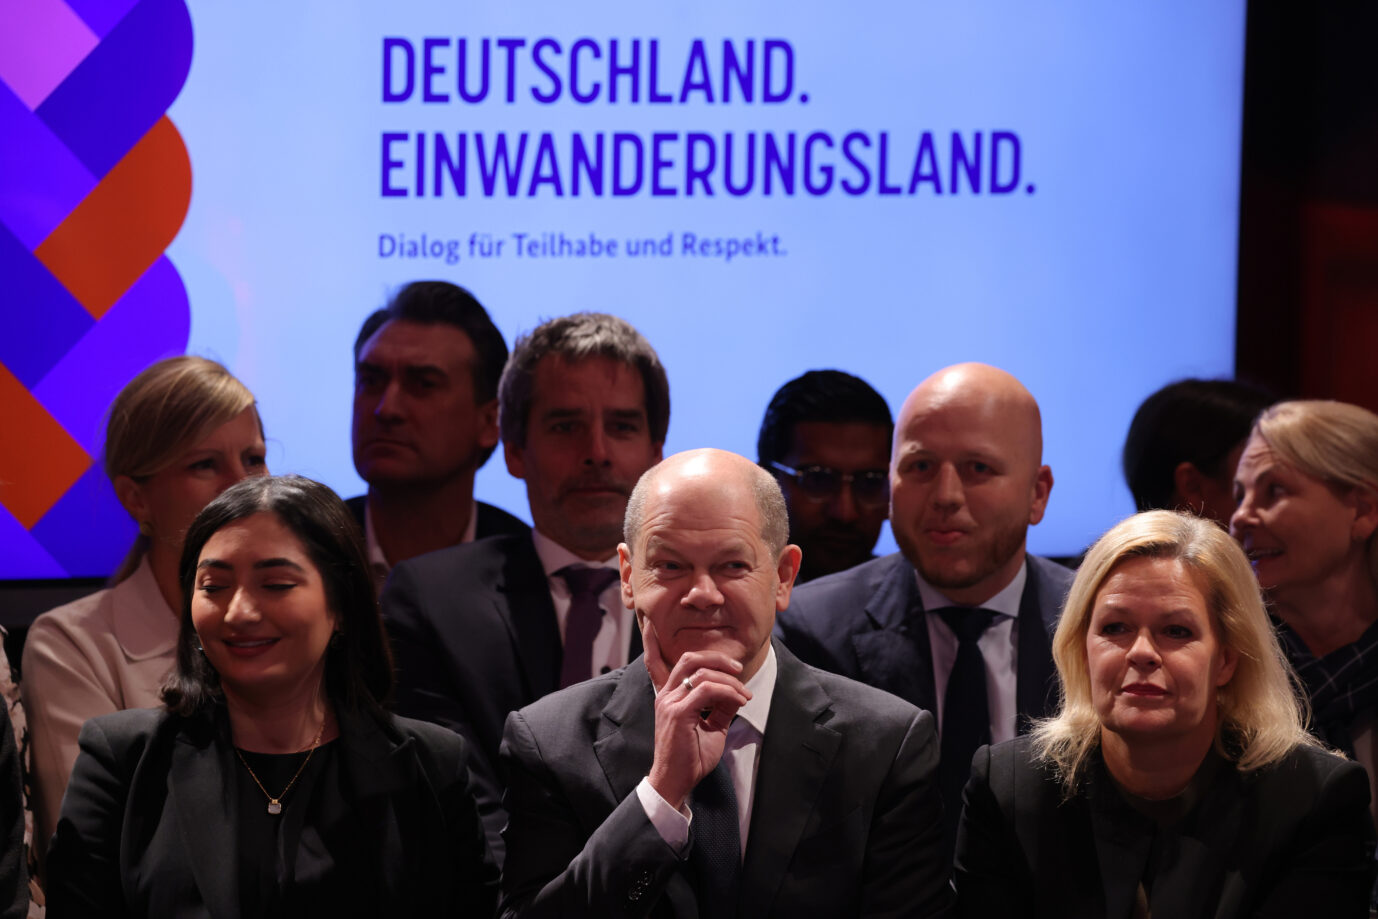 Bundeskanzler Olaf Scholz von der SPD steht neben Bundesinnenministerin Nancy Faeser auf einer Veranstaltung für mehr Einwanderung und Integration. Um ie Silvester-Krawalle geht es nicht.